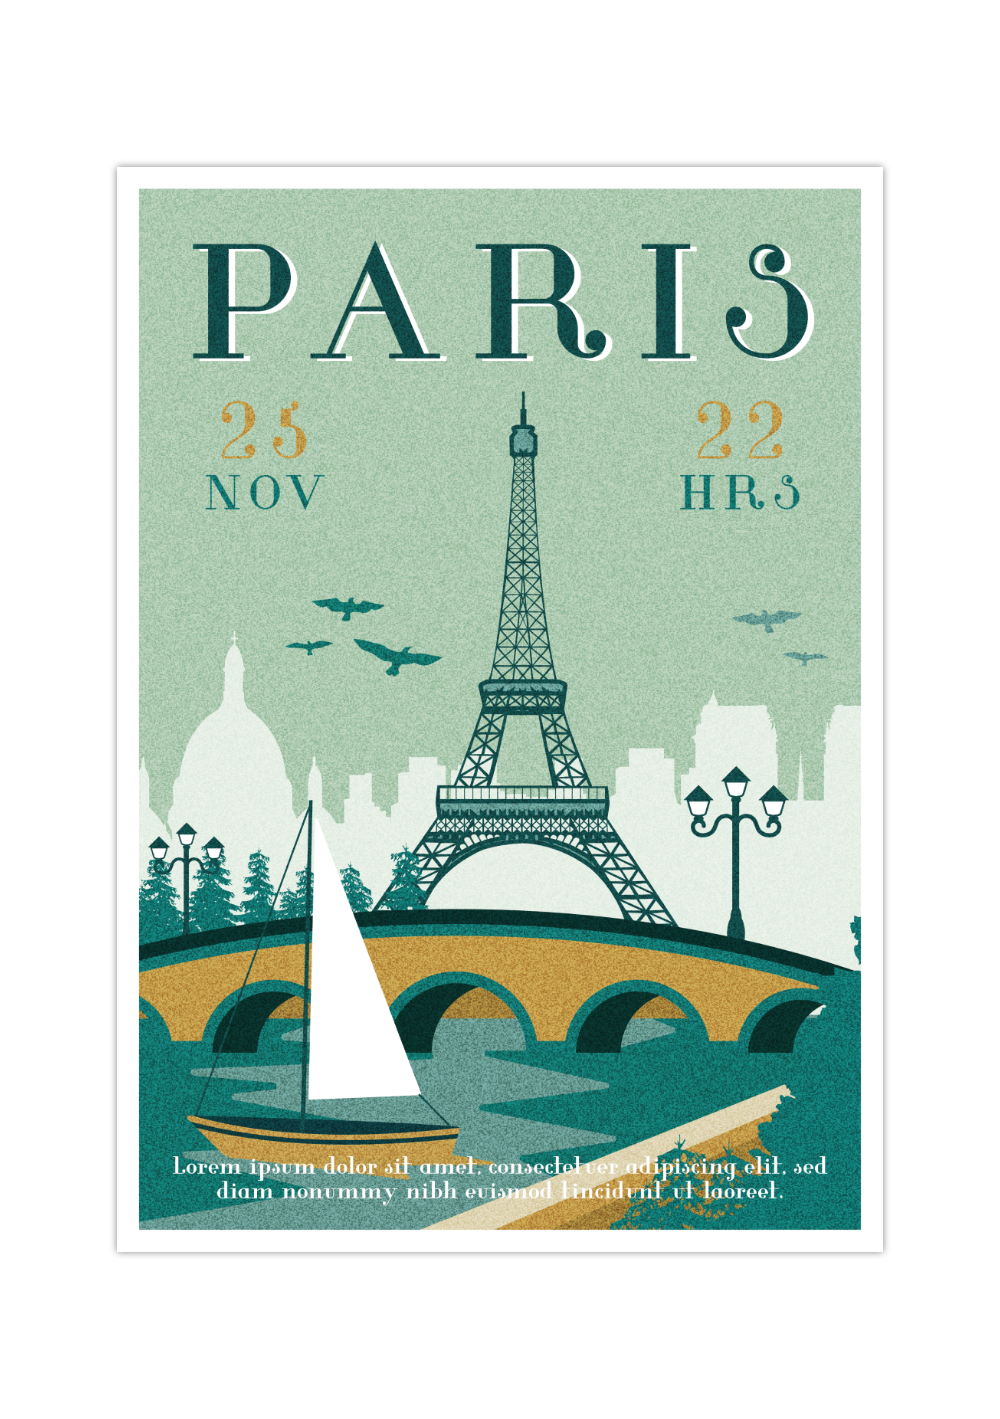 Das Vintage Poster zeigt dir eine retro Ansicht von Paris, mit Eiffelturm, Saine und einem Boot.